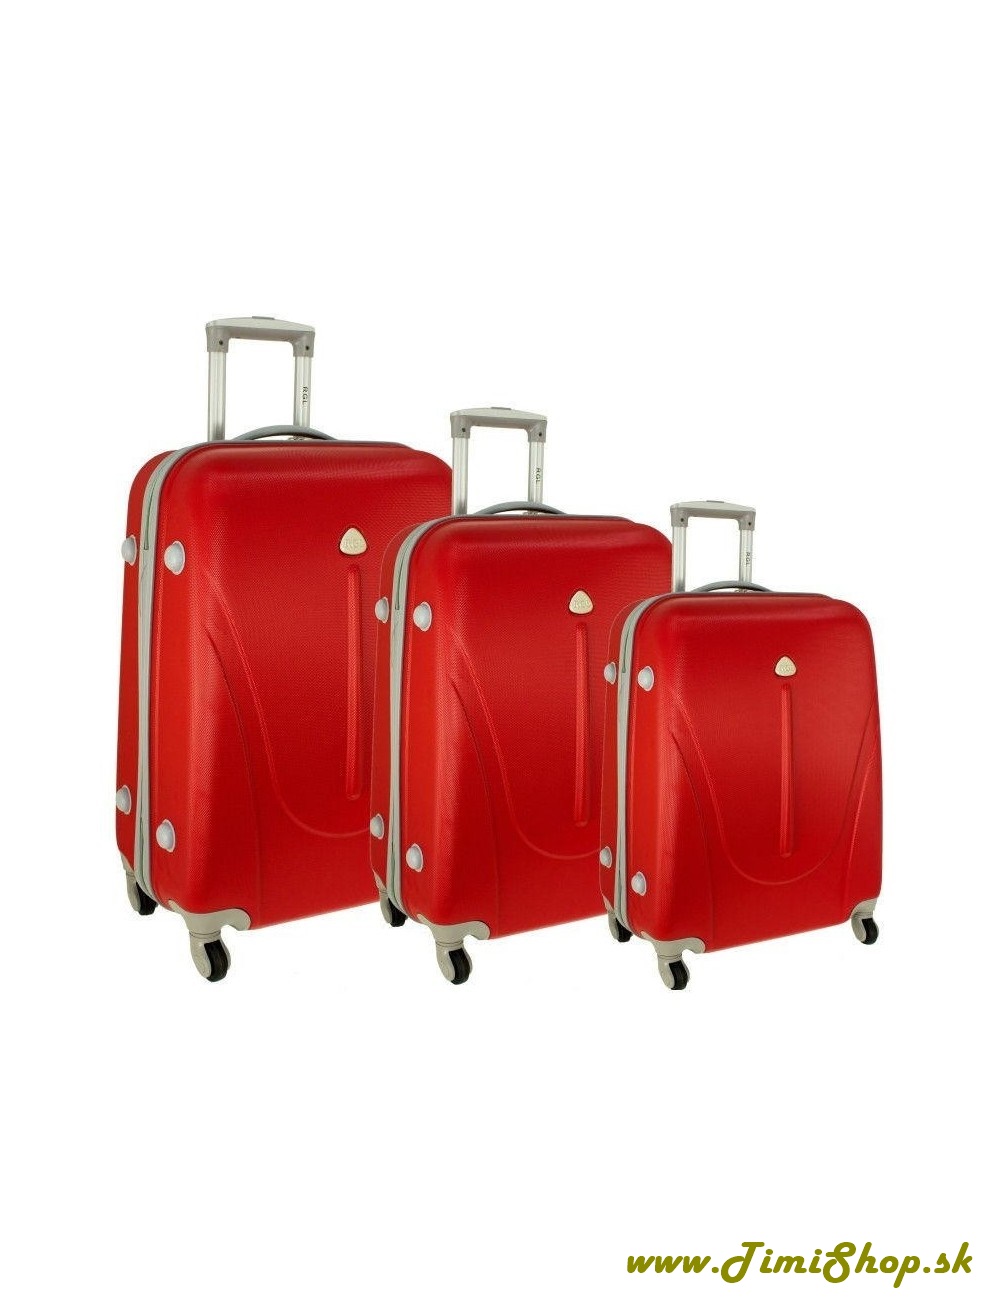 Sada cestovných kufrov 3v1 XXL, XL, L - Červena